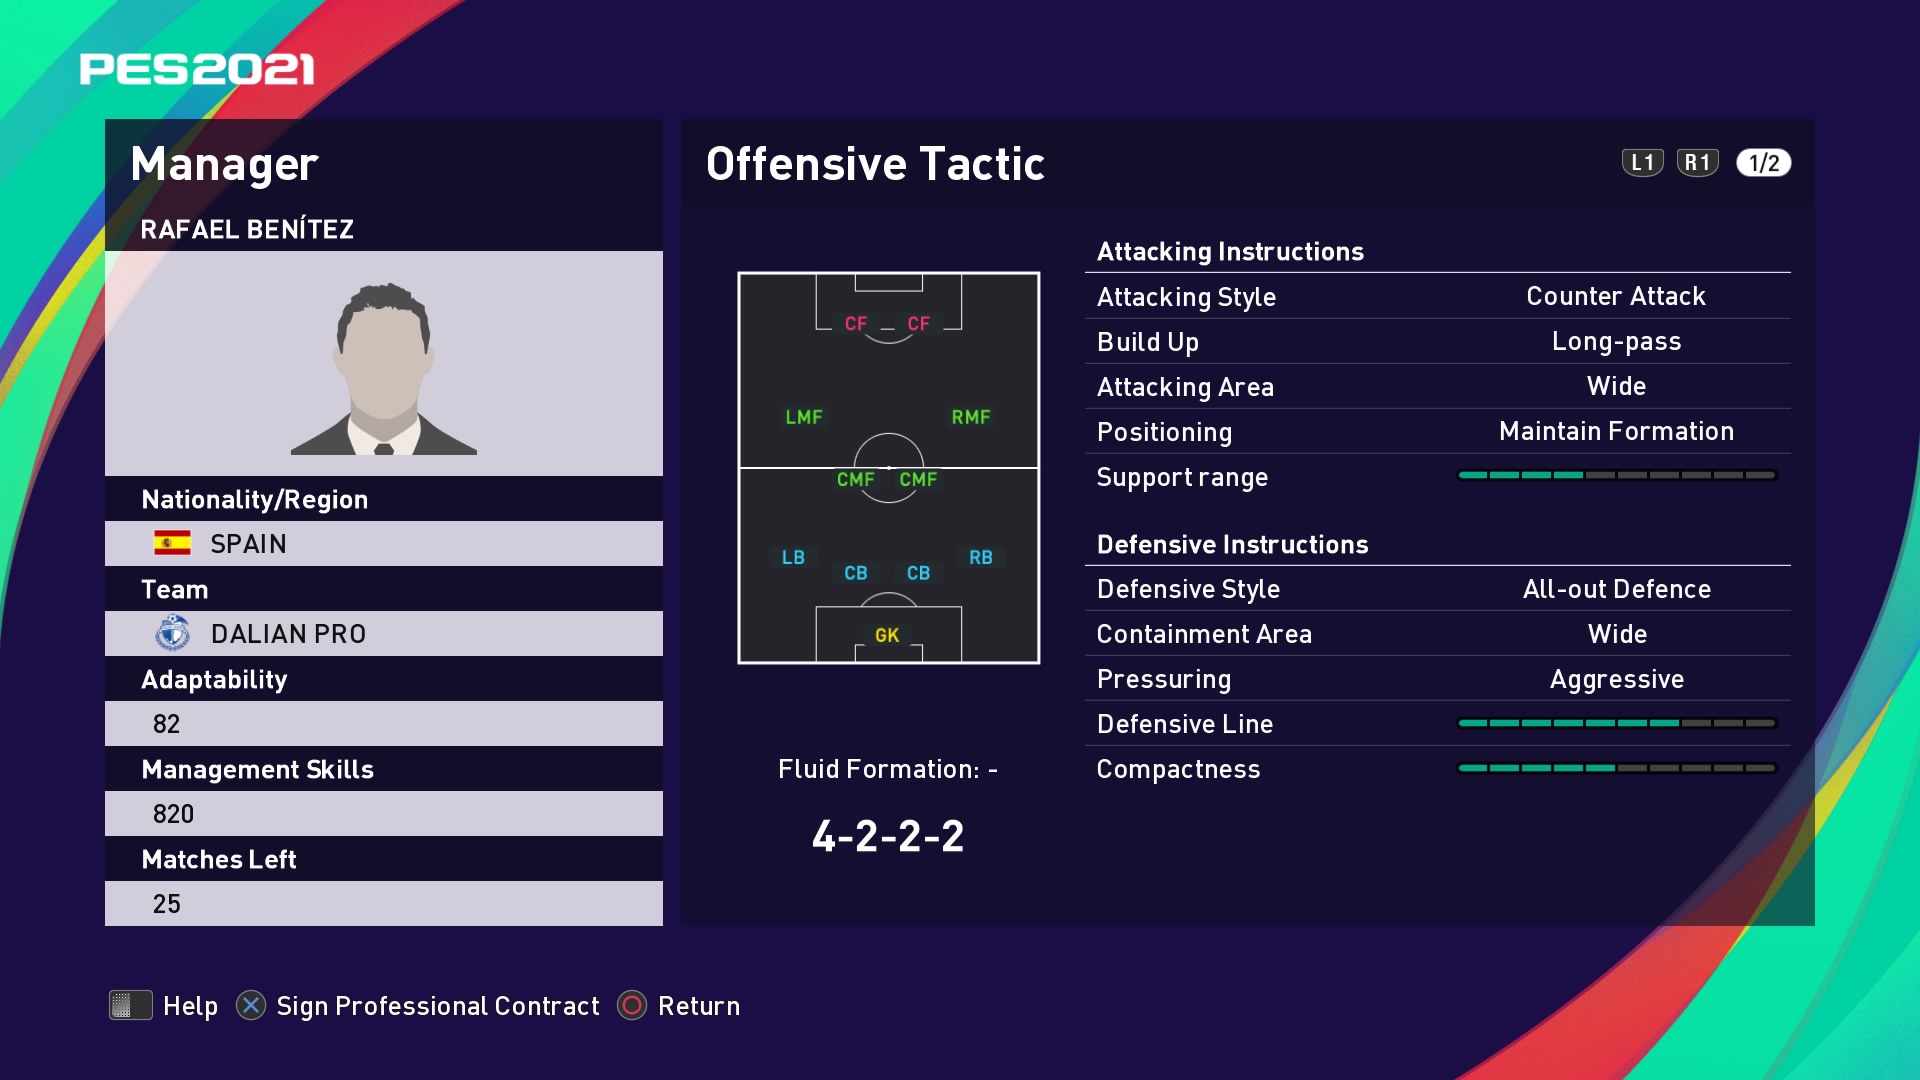 Rafael Benítez Offensive Tactic in PES 2021 myClub